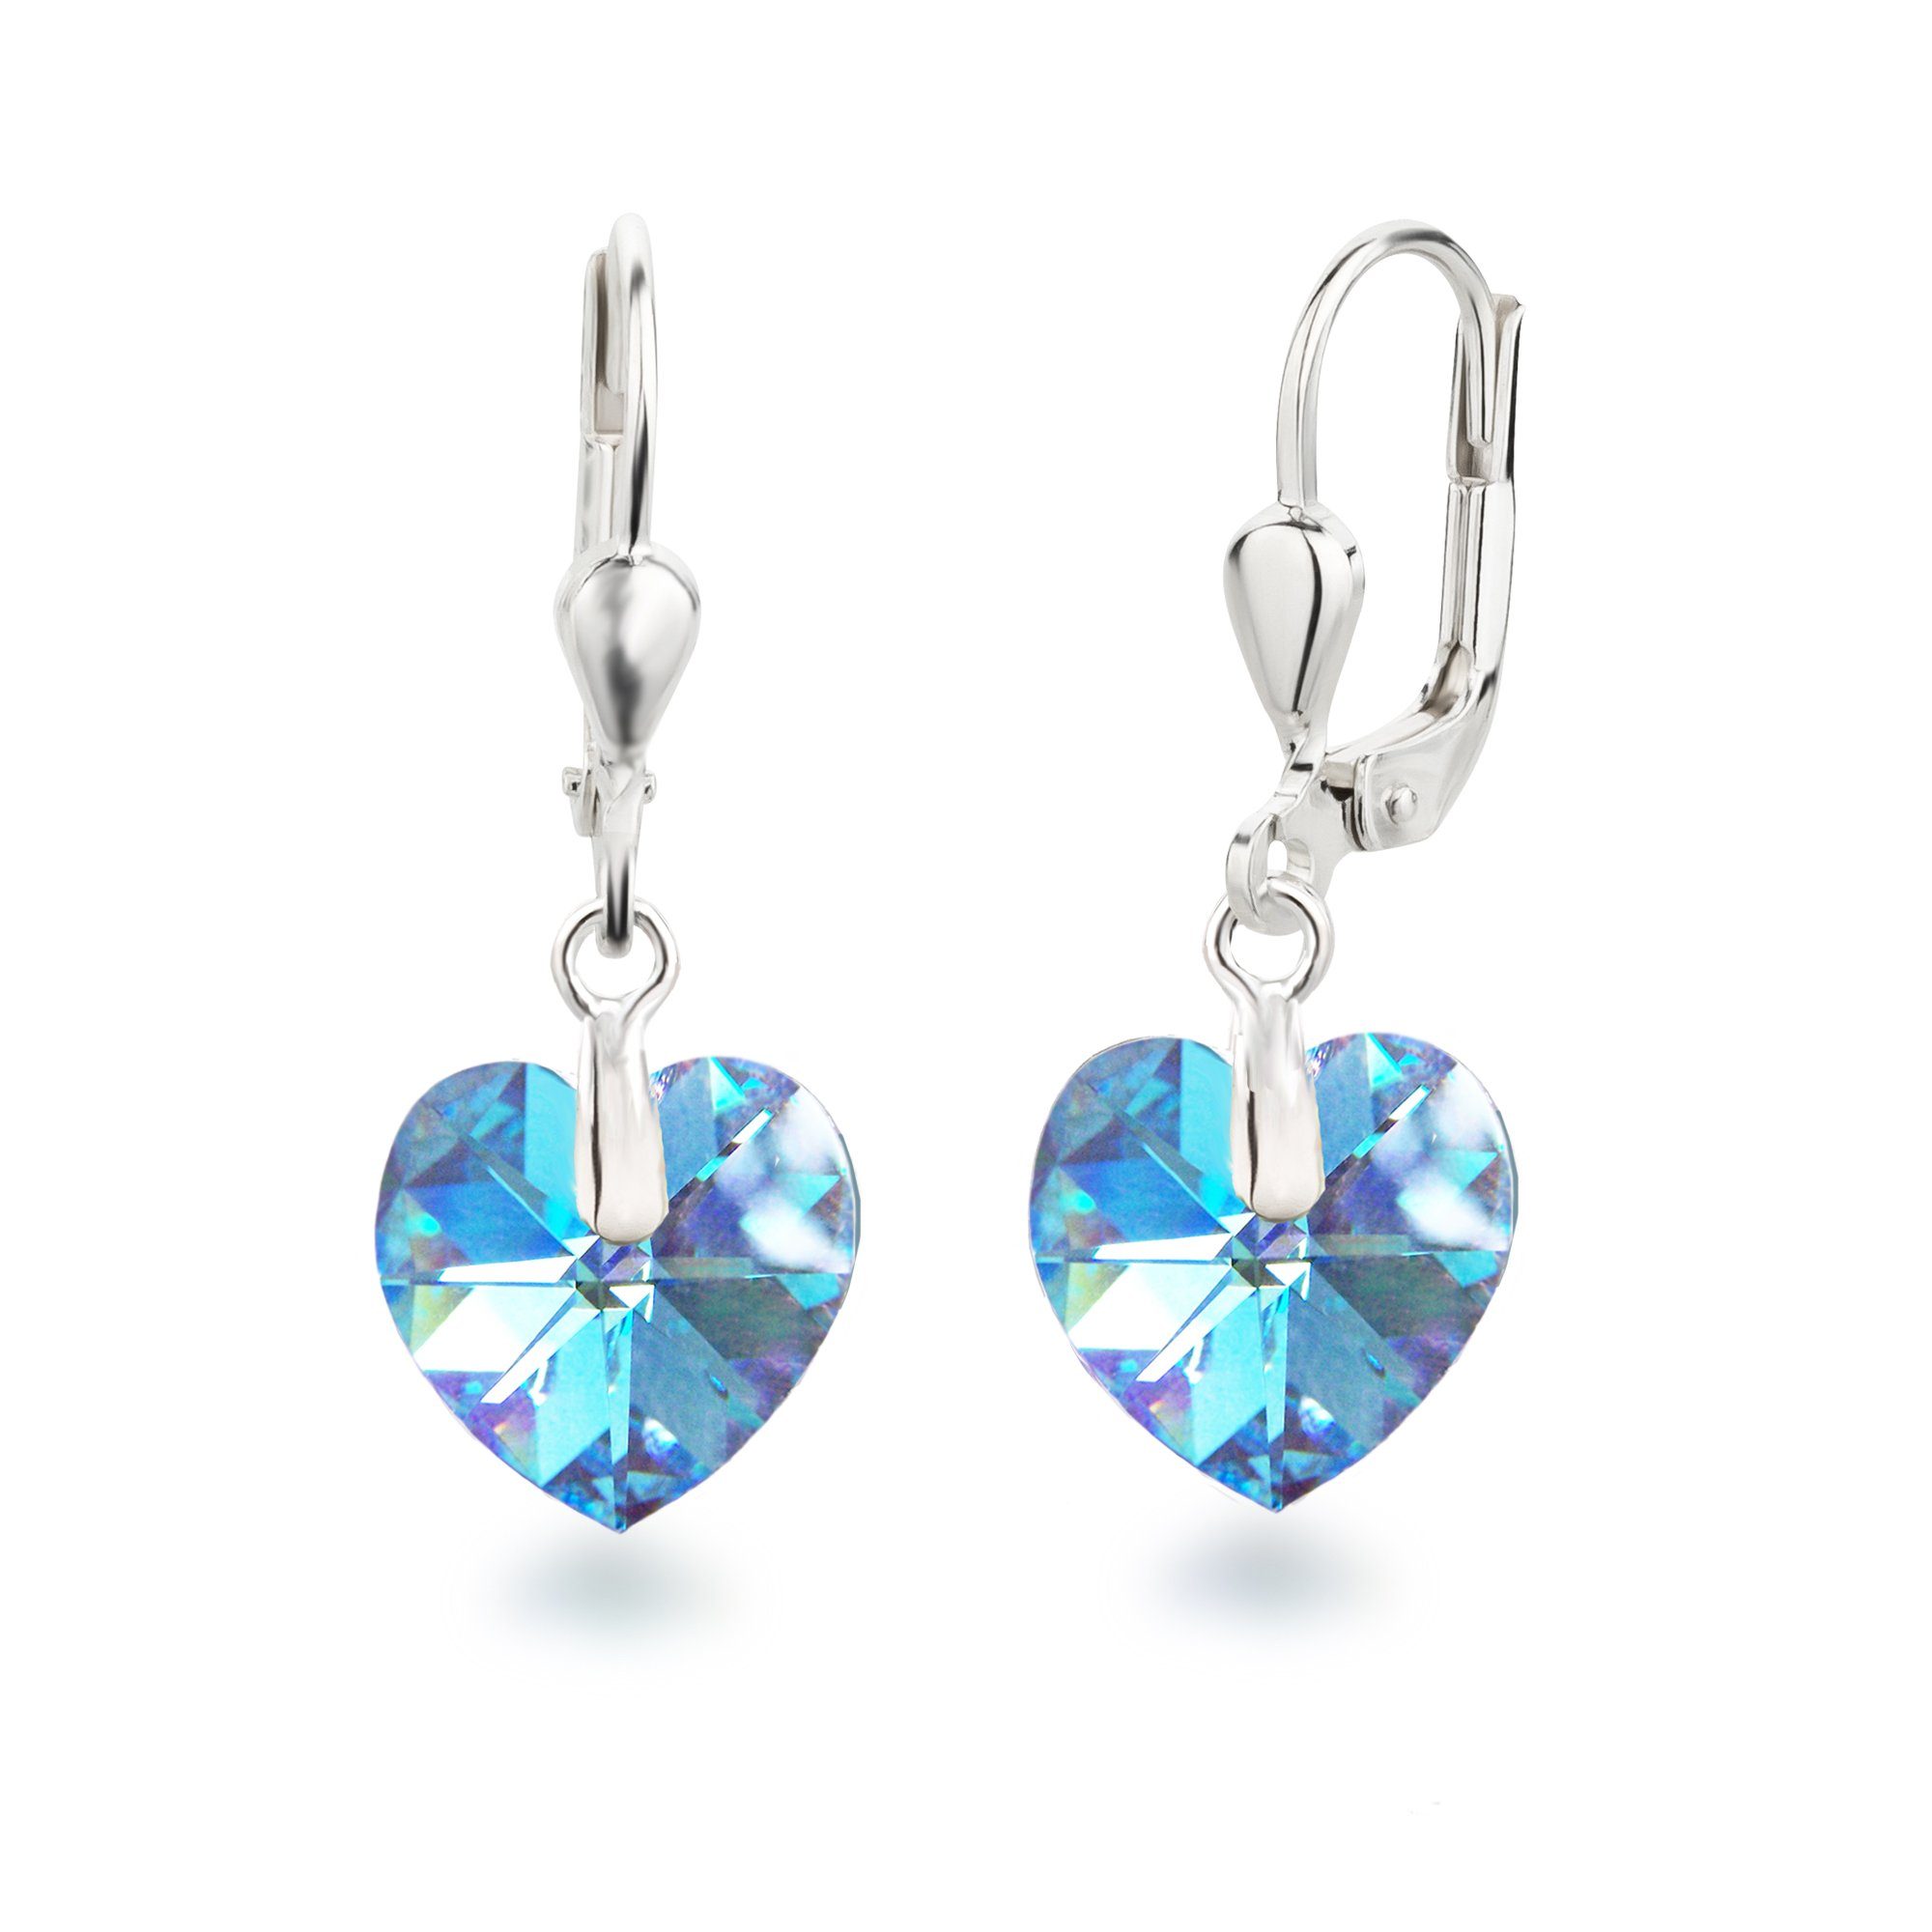 Schöner-SD Paar Ohrhänger Ohrringe hängend mit Herz Kristall 10mm für Damen und Mädchen, 925 Silber Aquamarin